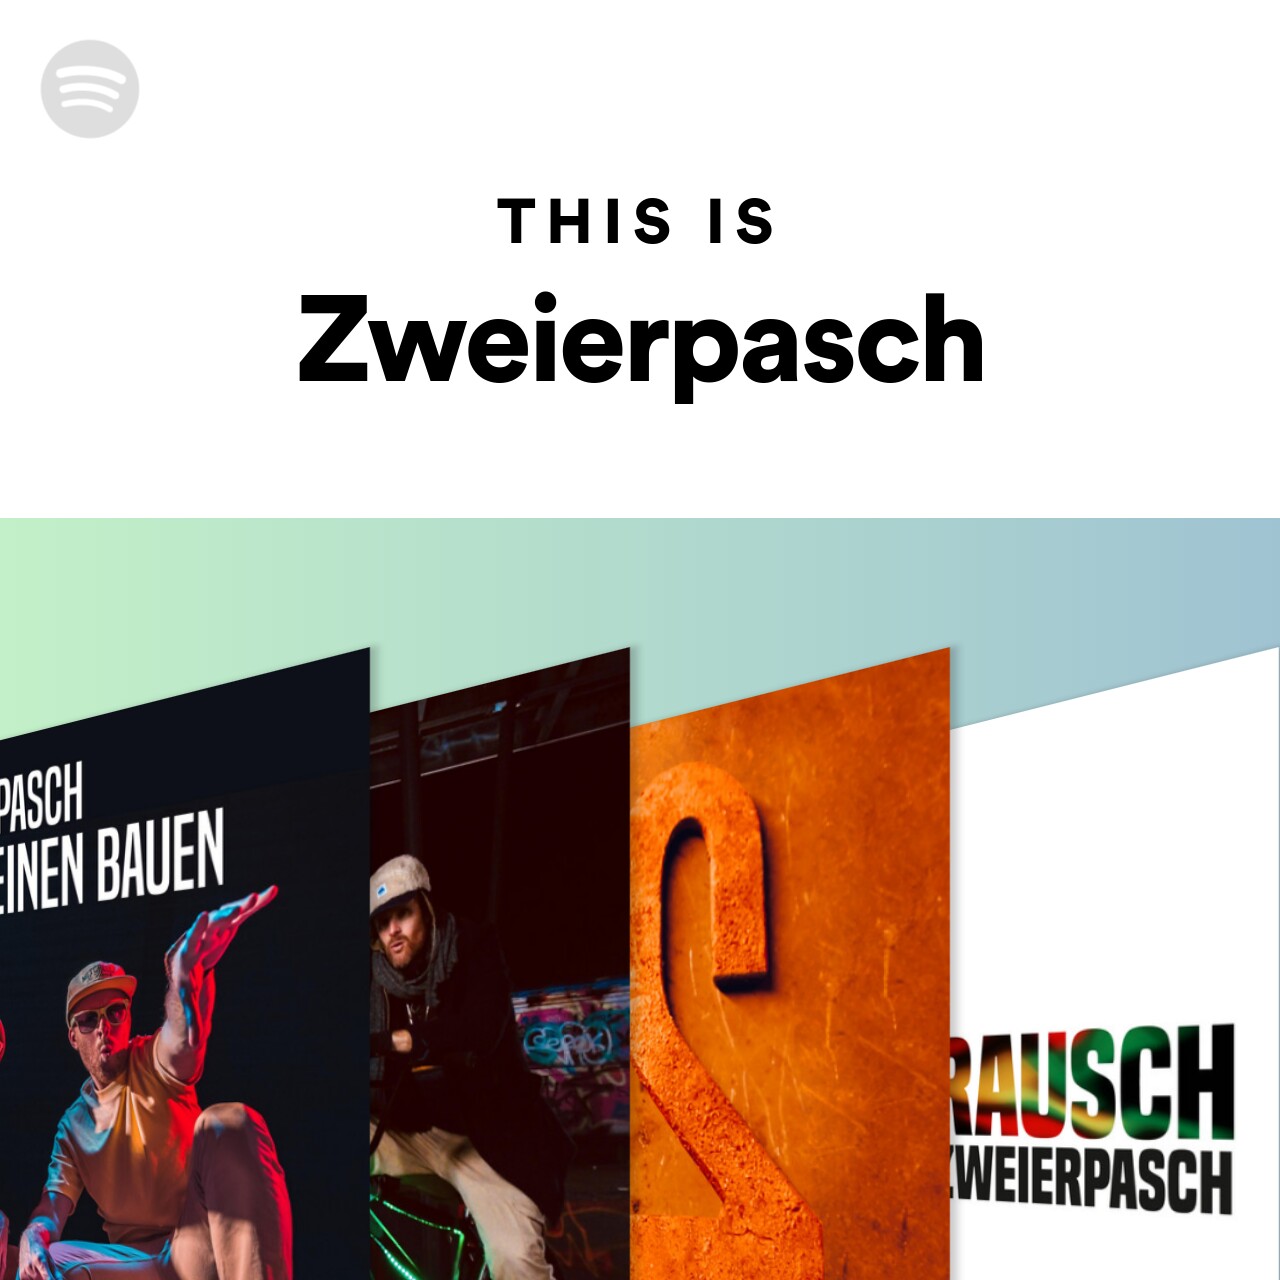 This Is Zweierpasch